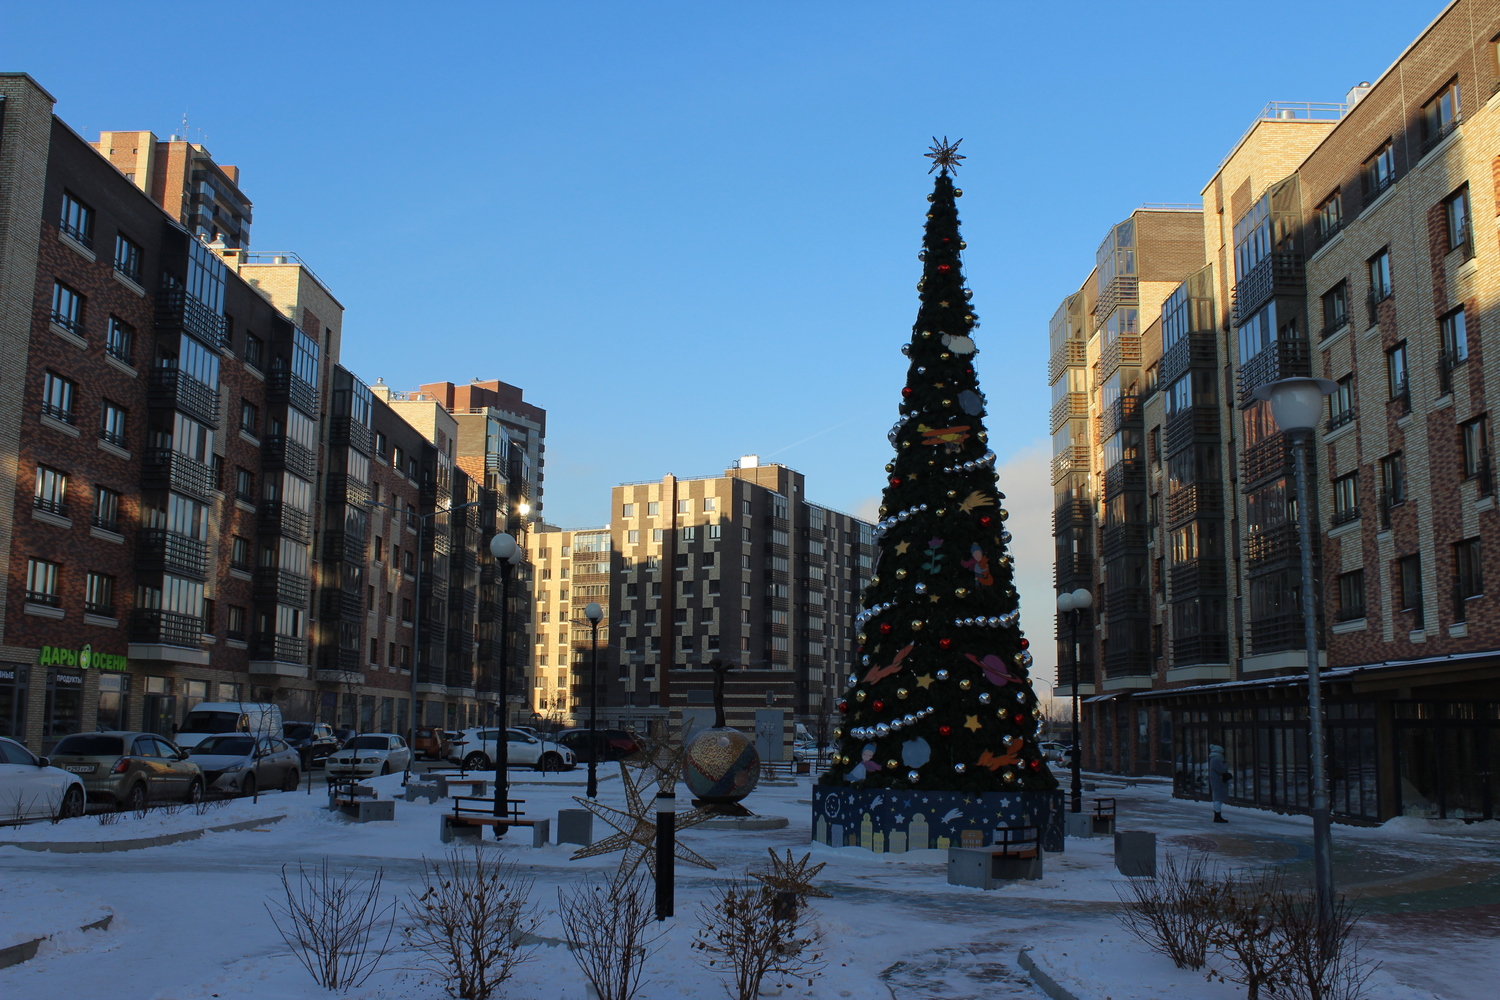 Красноярский ЖК "Южный берег" преобразился к Новому году: яркие звезды, елки и праздничная железная дорога